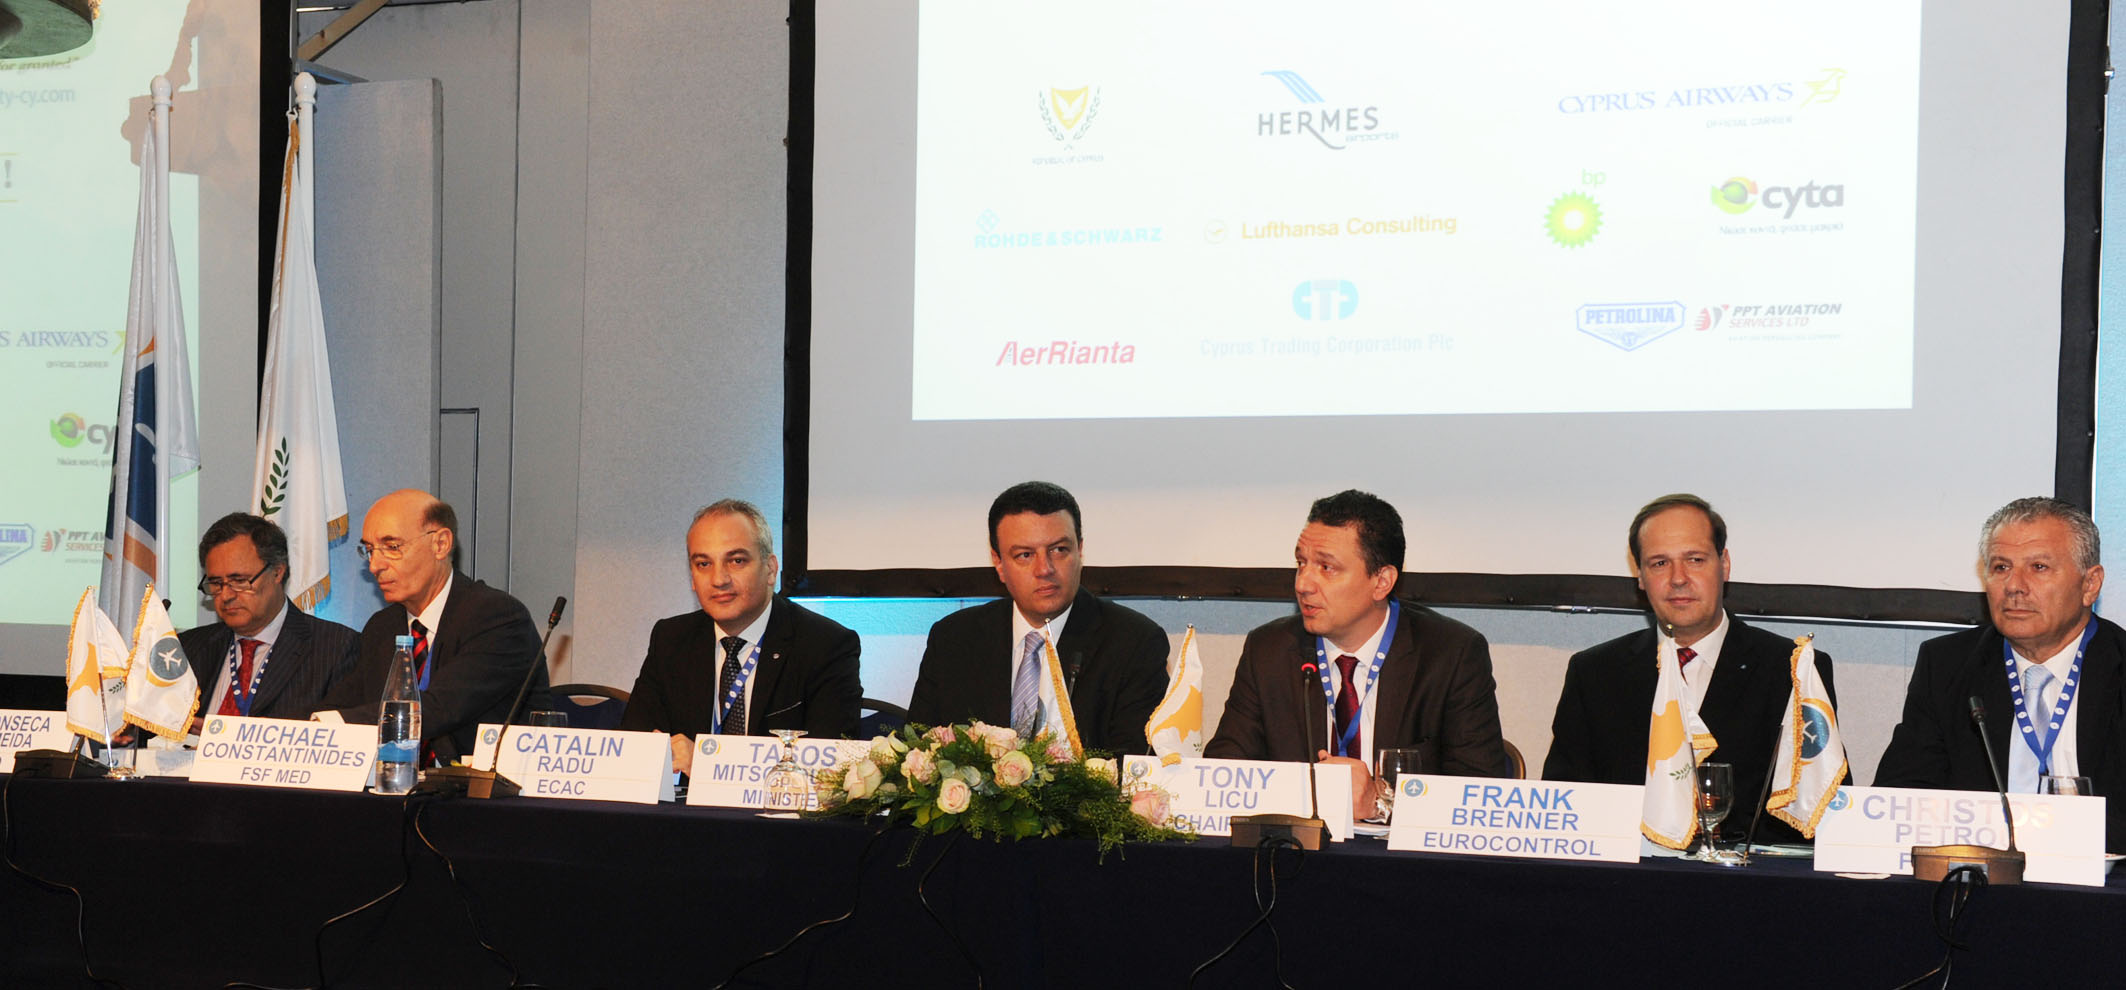 Ο Υπουργός Συγκοινωνιών κηρύσσει την έναρξη των εργασιών του διεθνούς συνεδρίου για την ασφάλεια των πτήσεων με τίτλο “Aviation safety in the turbulence of the current economic crisis”.  